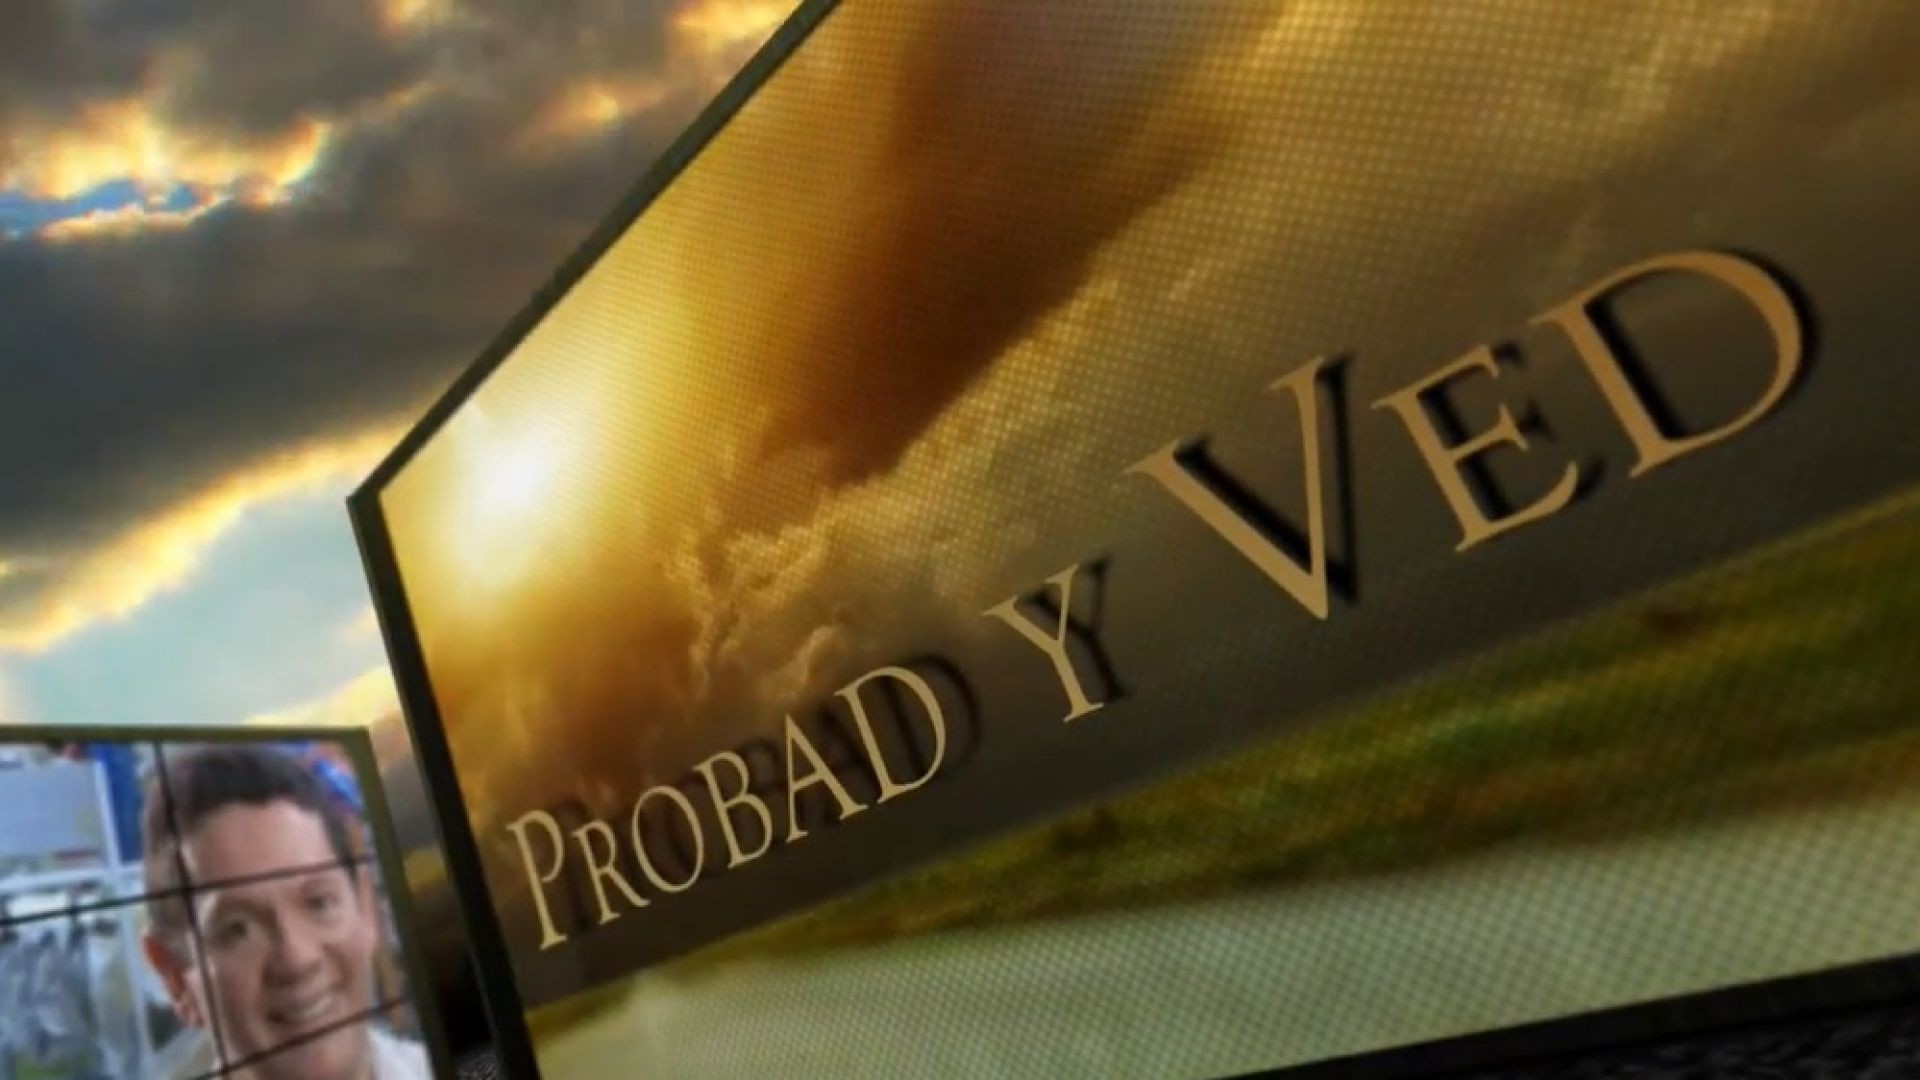 ⁣Probad y Ved 2013 - Primero Dios - 8/Jun